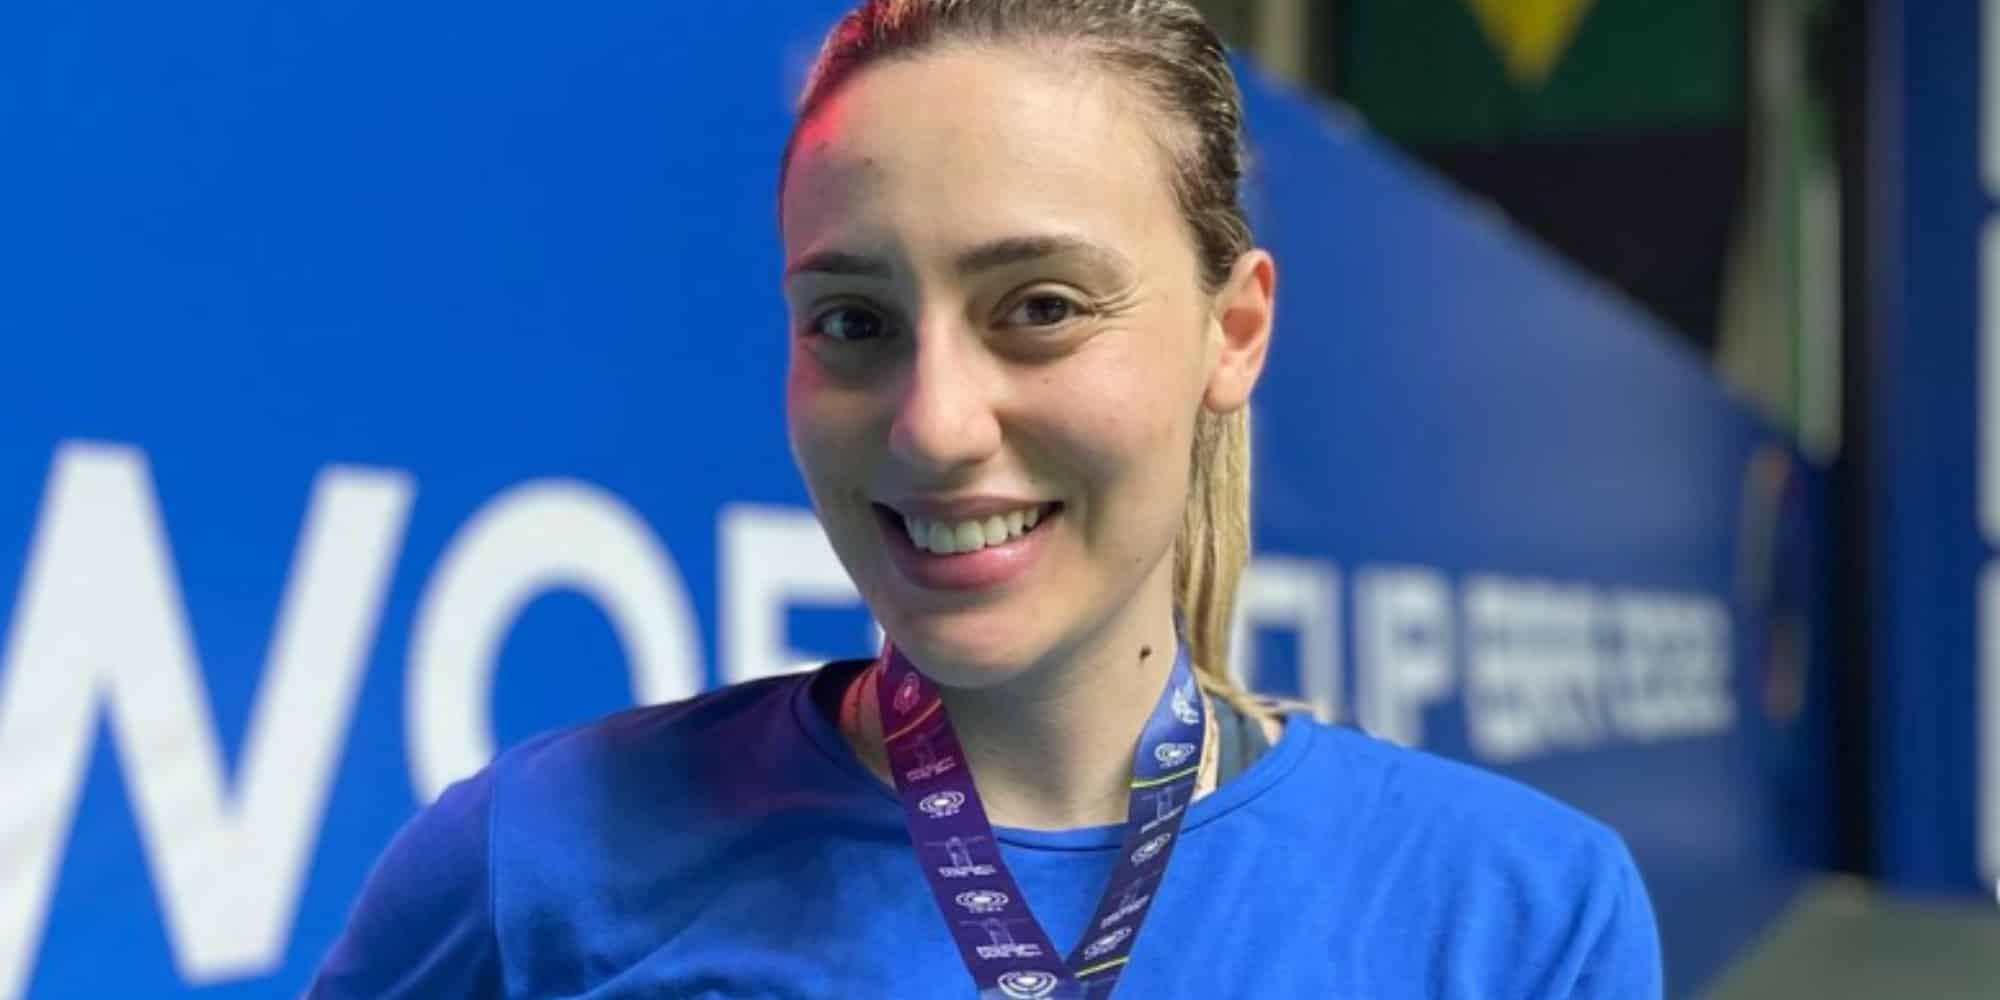 Σκοποβολή: Η Άννα Κορακάκη κατέκτησε το ασημένιο μετάλλιο στο παγκόσμιο πρωτάθλημα